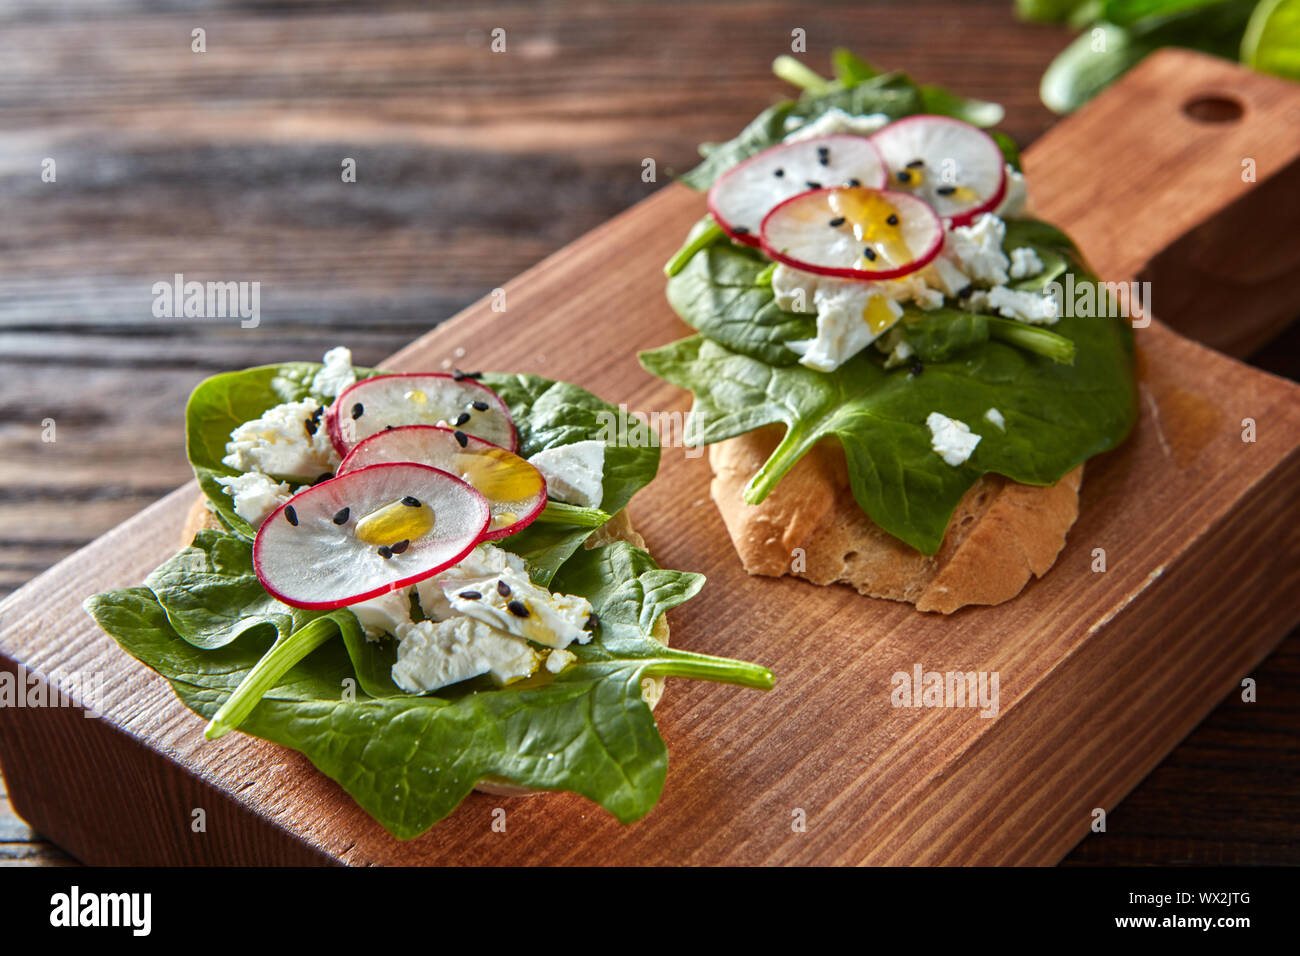 Toasts Ciabatta avec des tranches de fromage cottage, de radis, épinards frais, graines de lin sur fond de bois. Banque D'Images